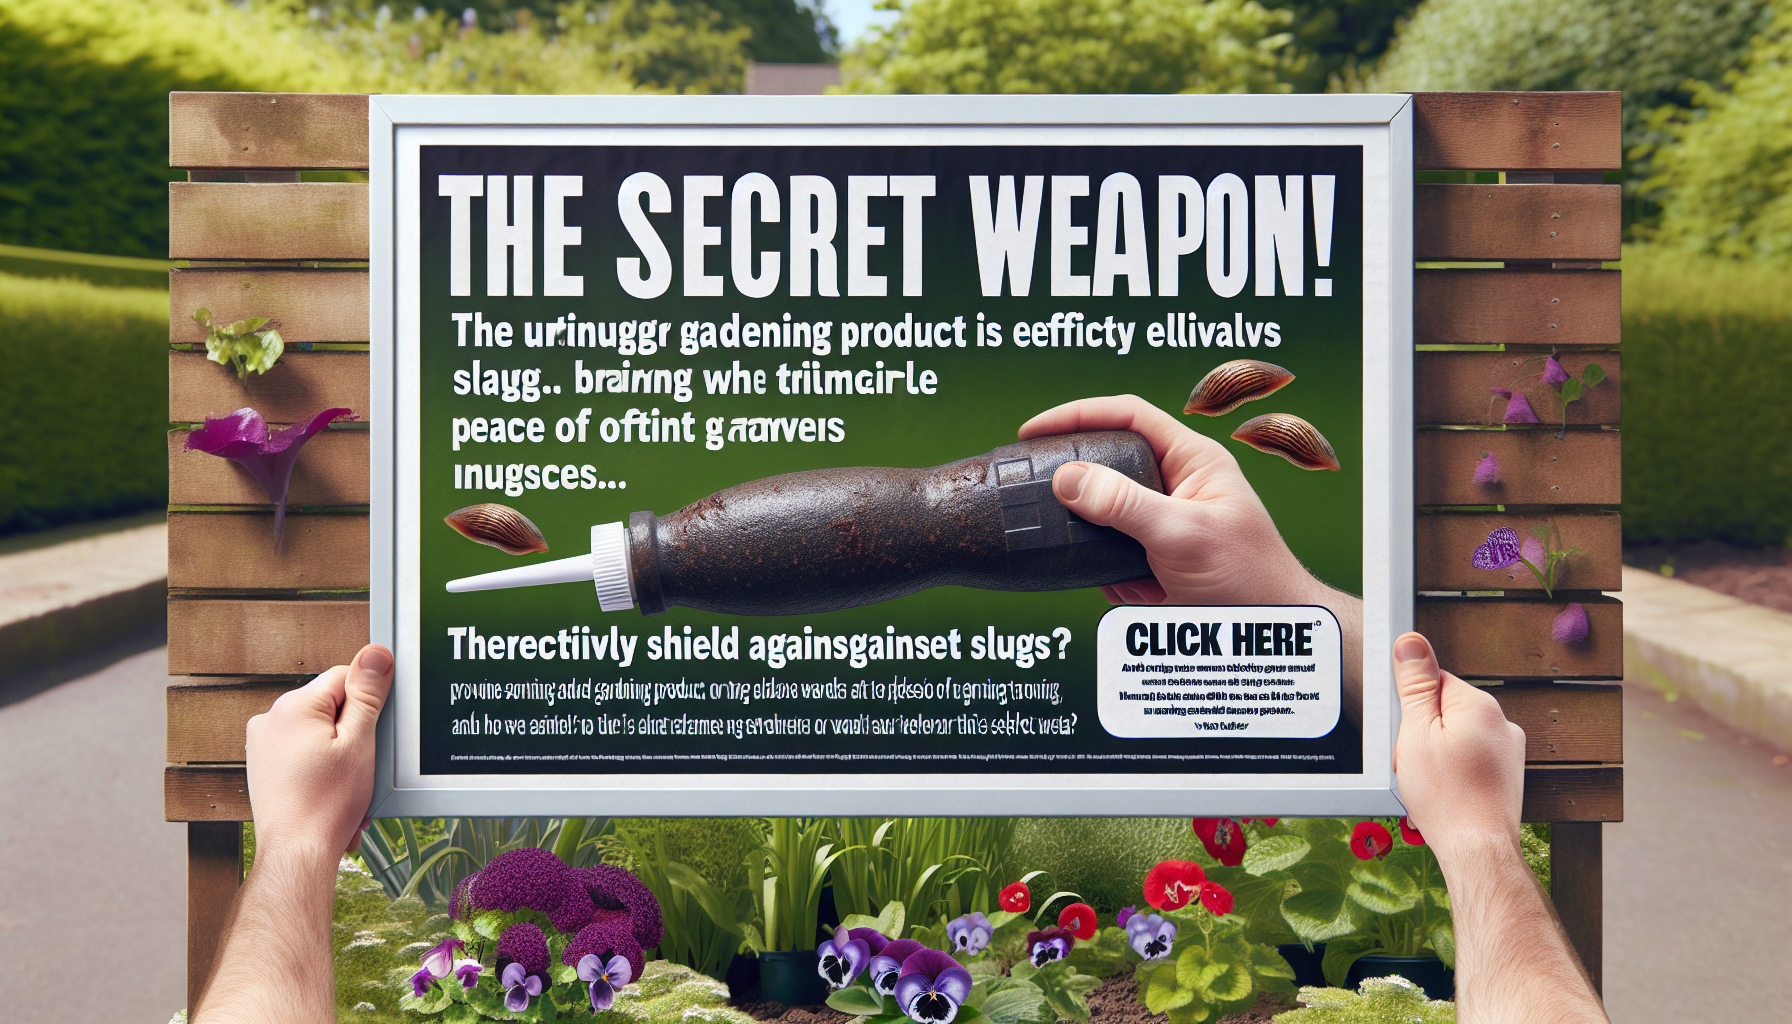 découvrez ce produit miracle en jardinerie qui met fin aux limaces pour de bon !